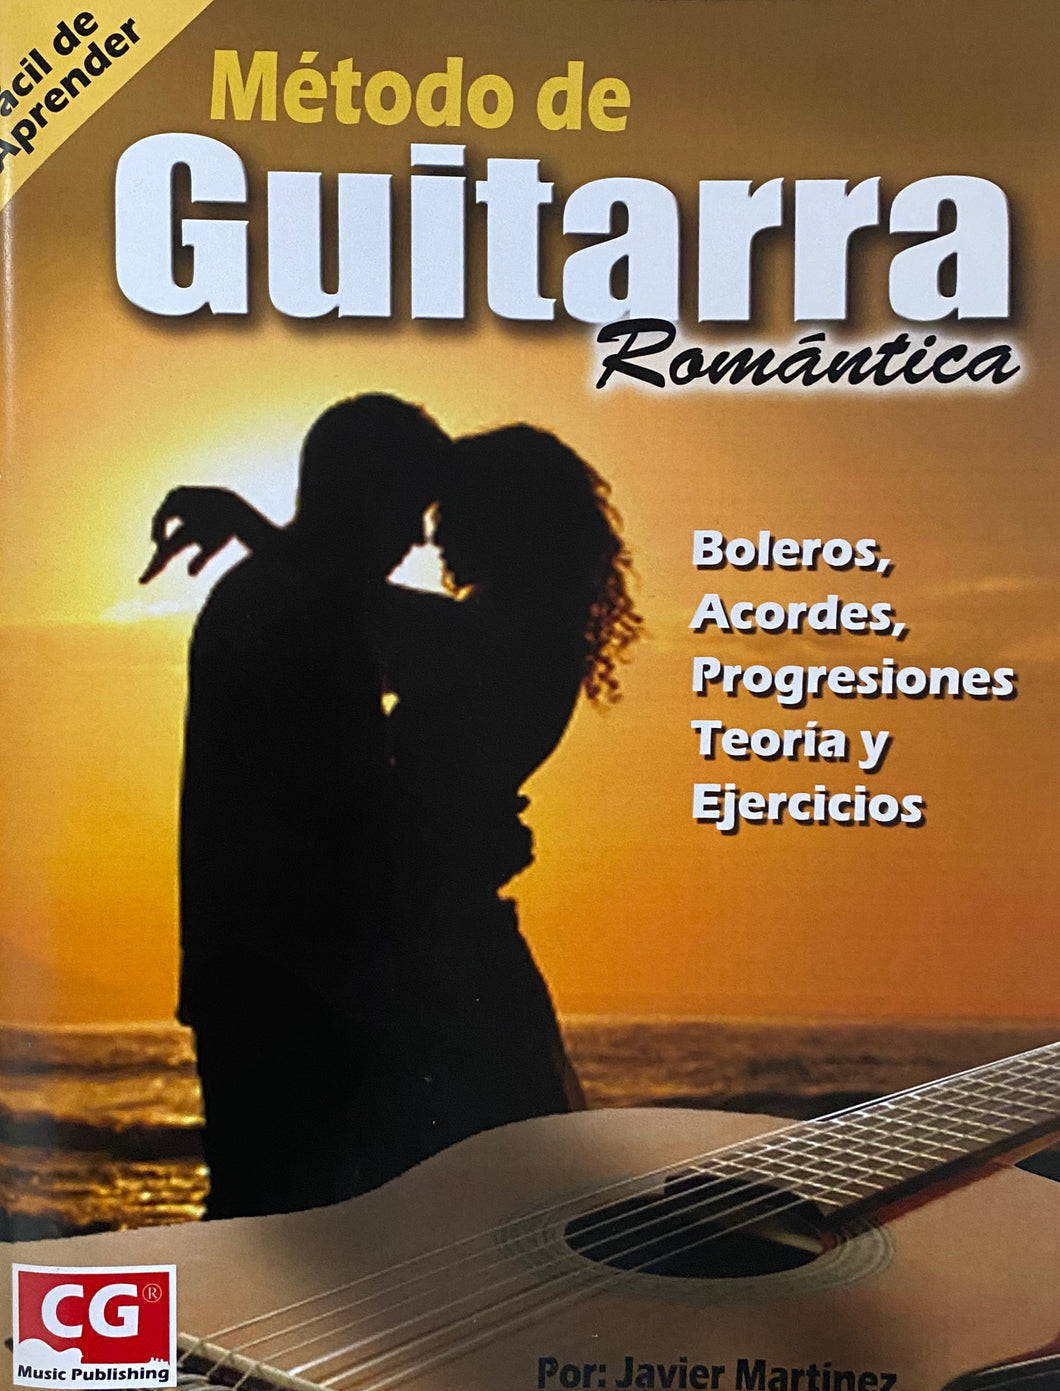 Método de Guitarra Romántica, por: Javier Martínez